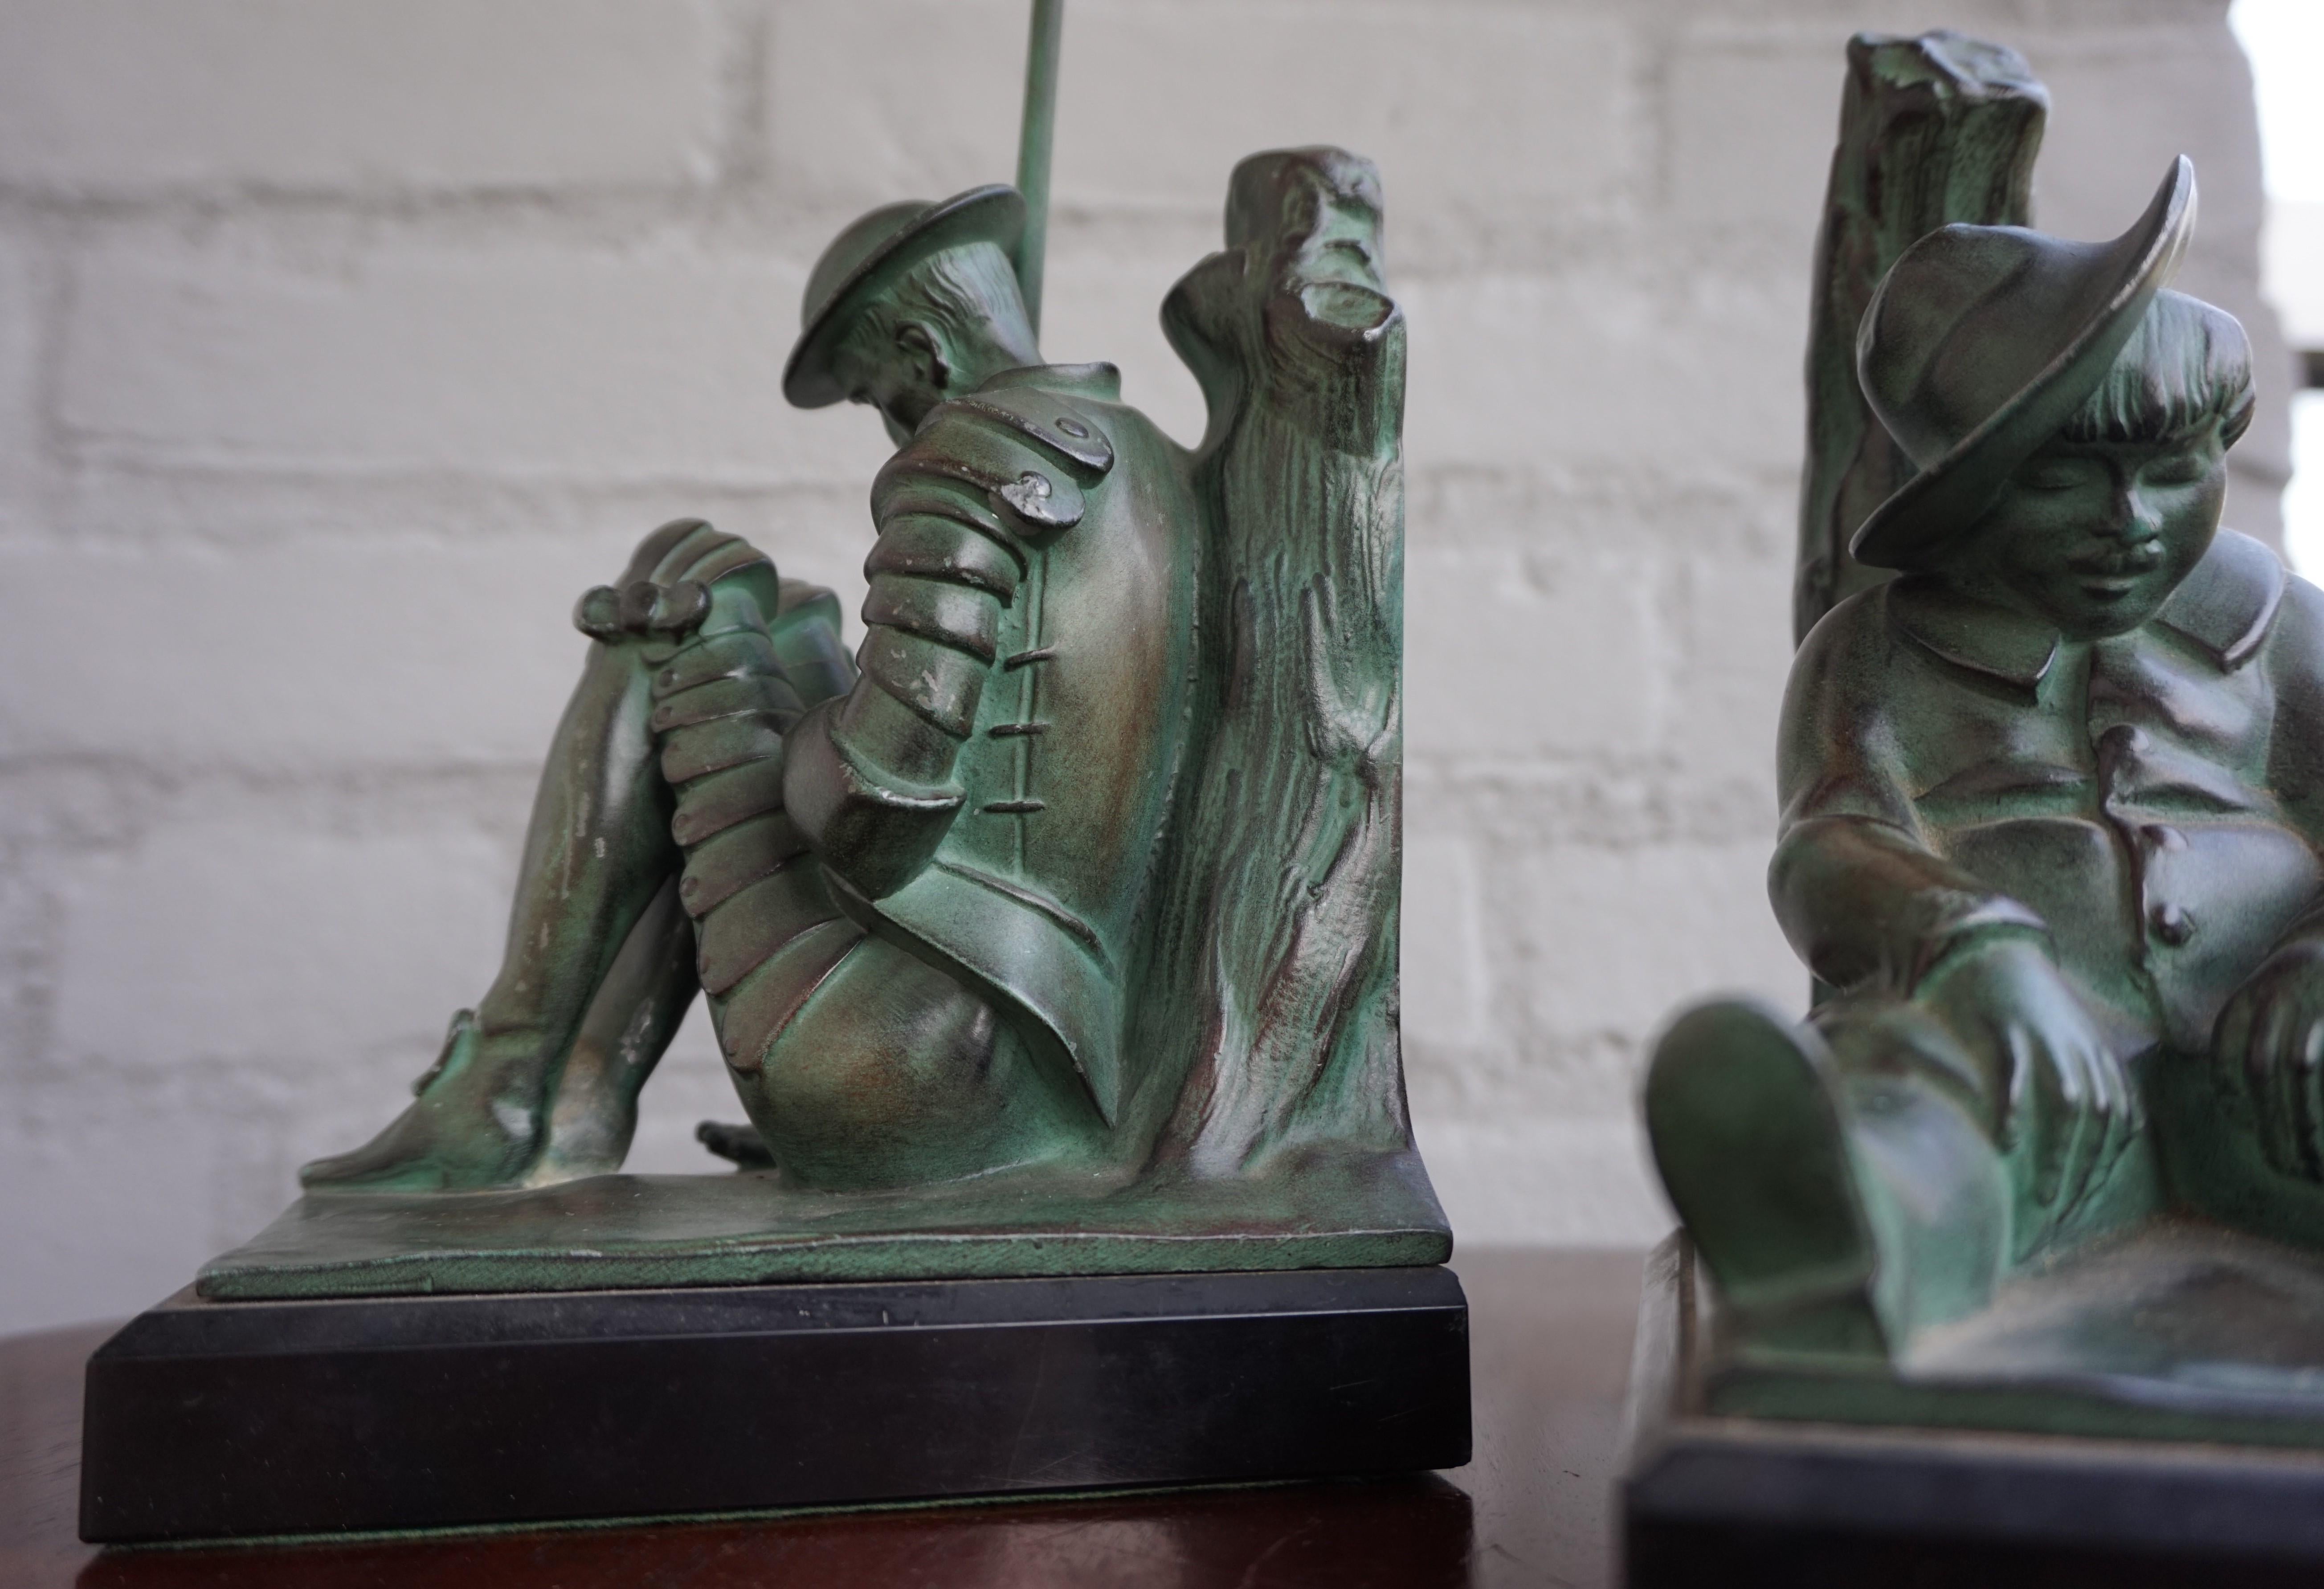 Bronze & Marble Art Deco Don Quixote & Sancho Panza Sculpture Bookends by Janle 1